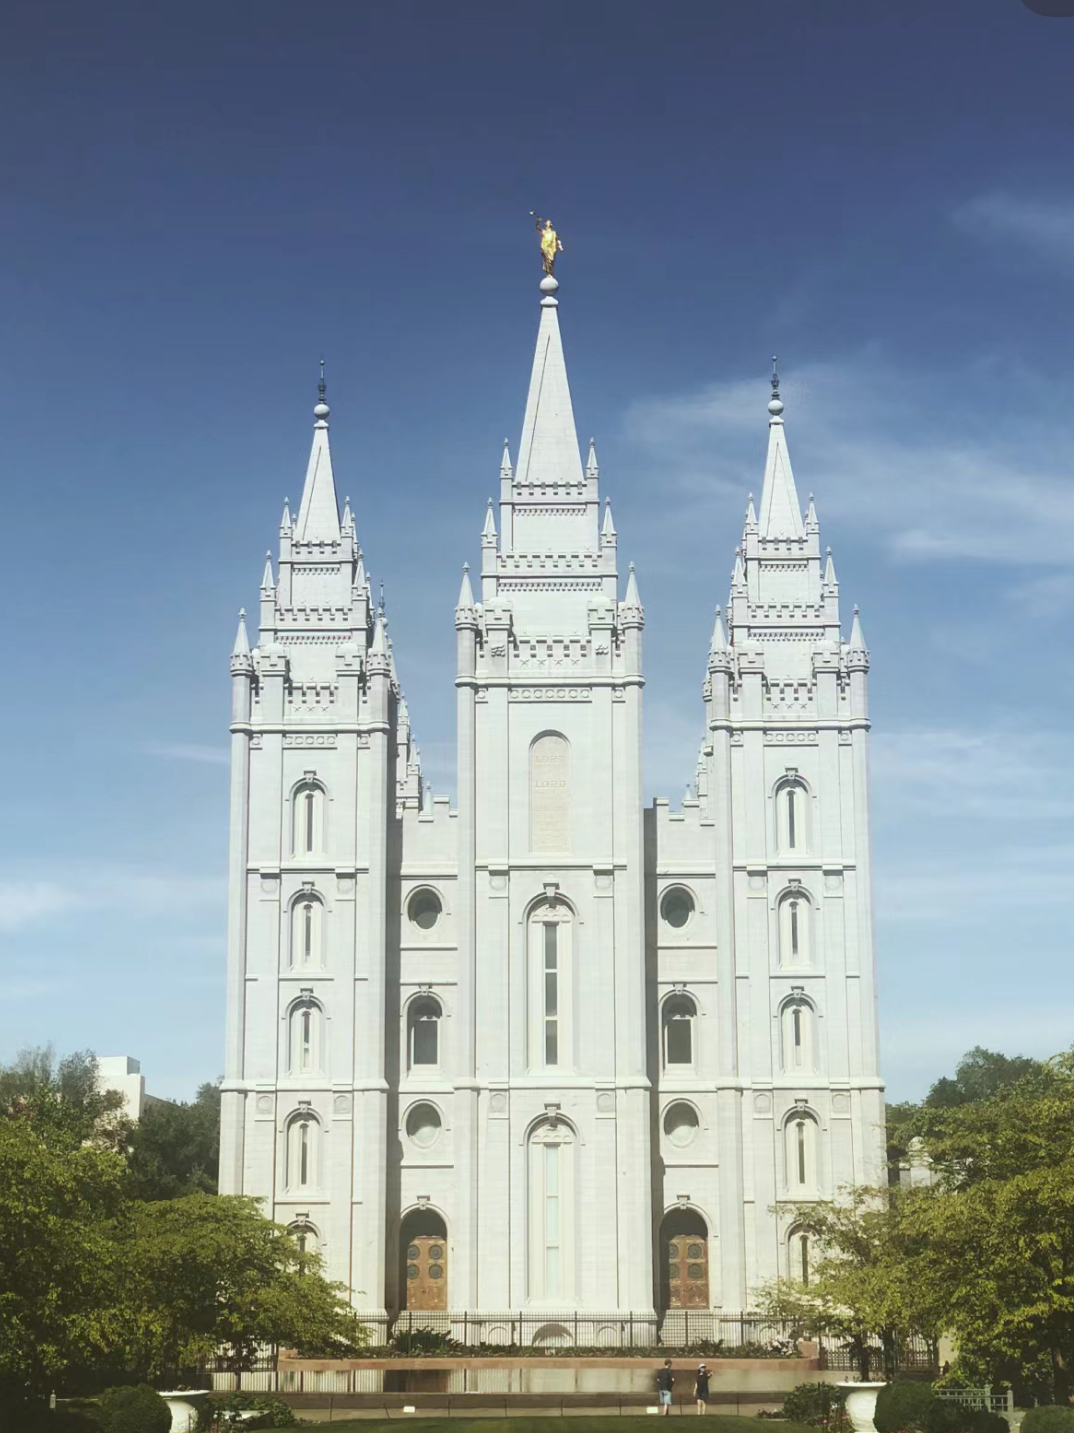 盐湖城 | 美西旅行卡必打之末日圣徒圣殿